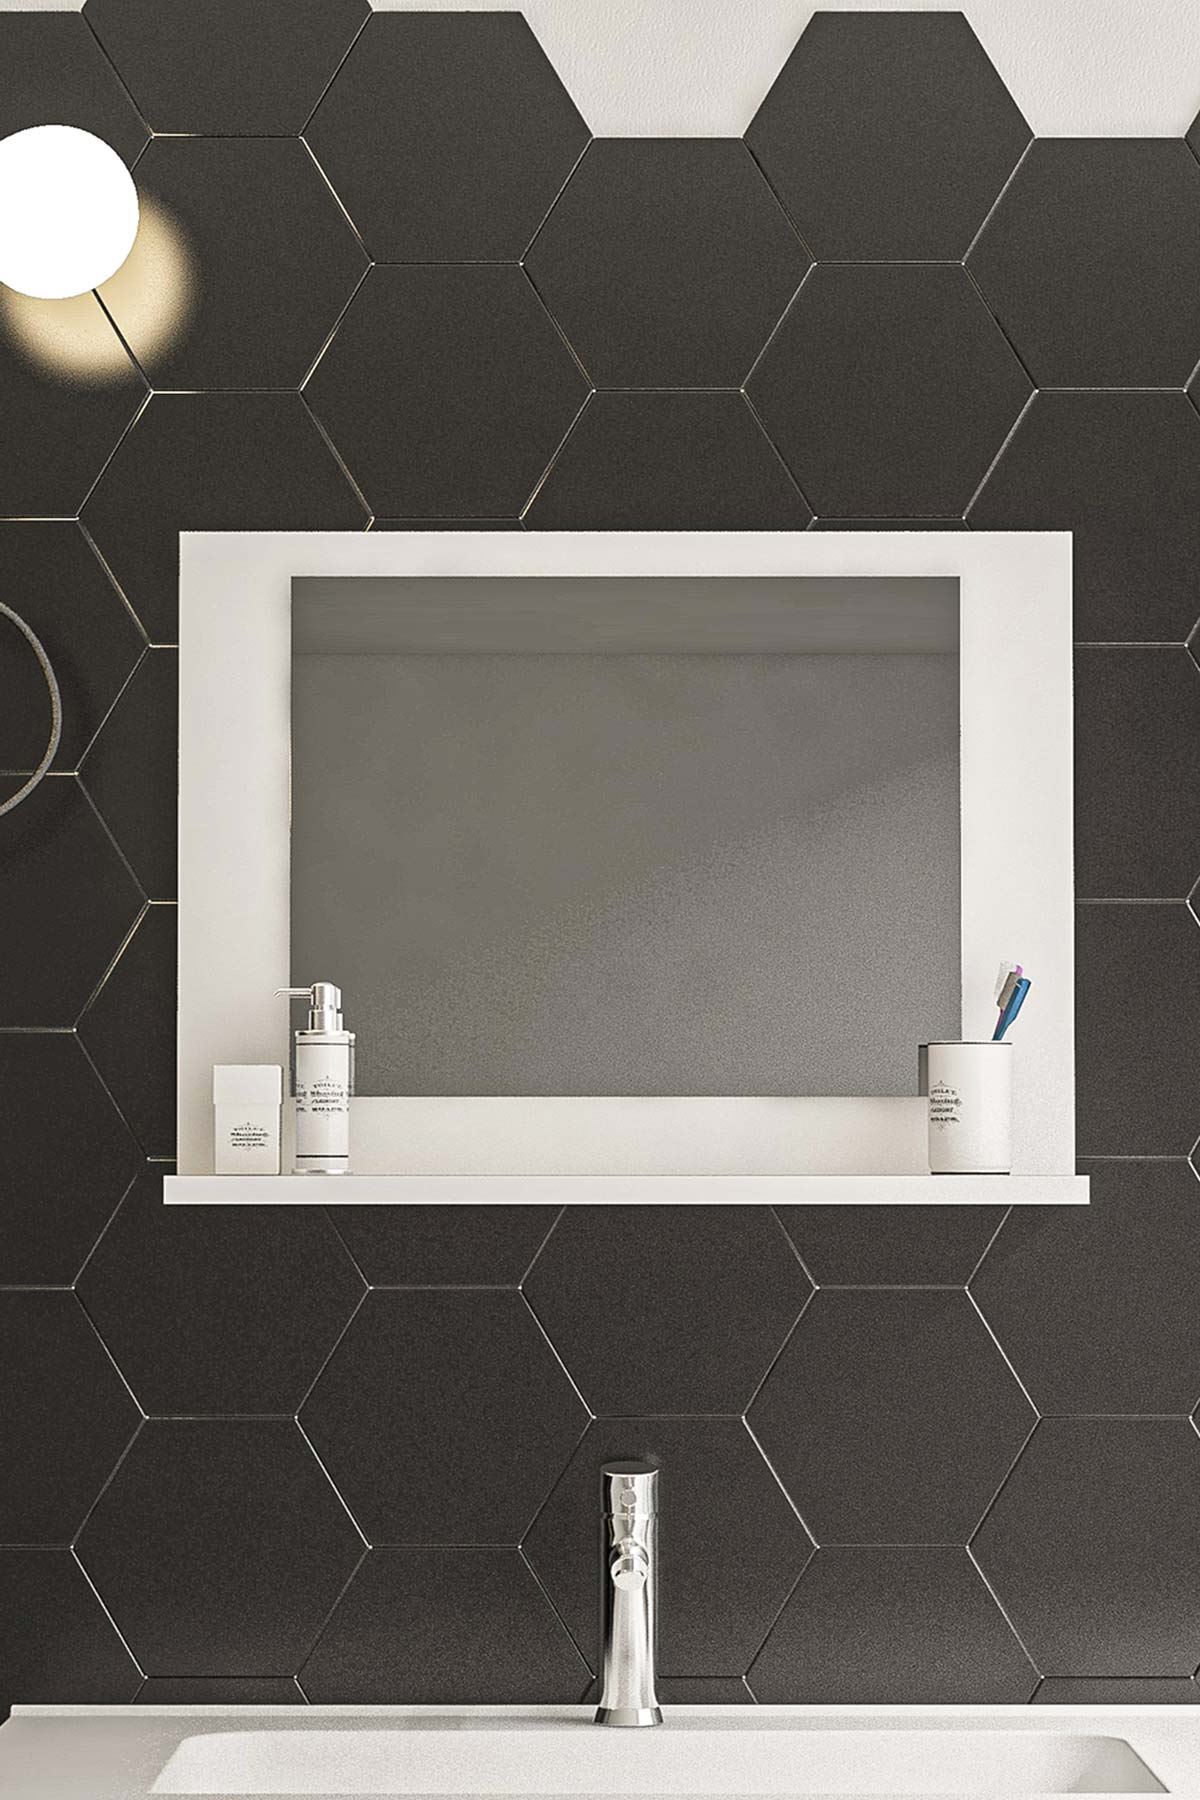 Bofigo 60x45 Cm Modena Banyo Rafı Lavabo Rafı Aynalı Raf Banyo Aynası Beyaz